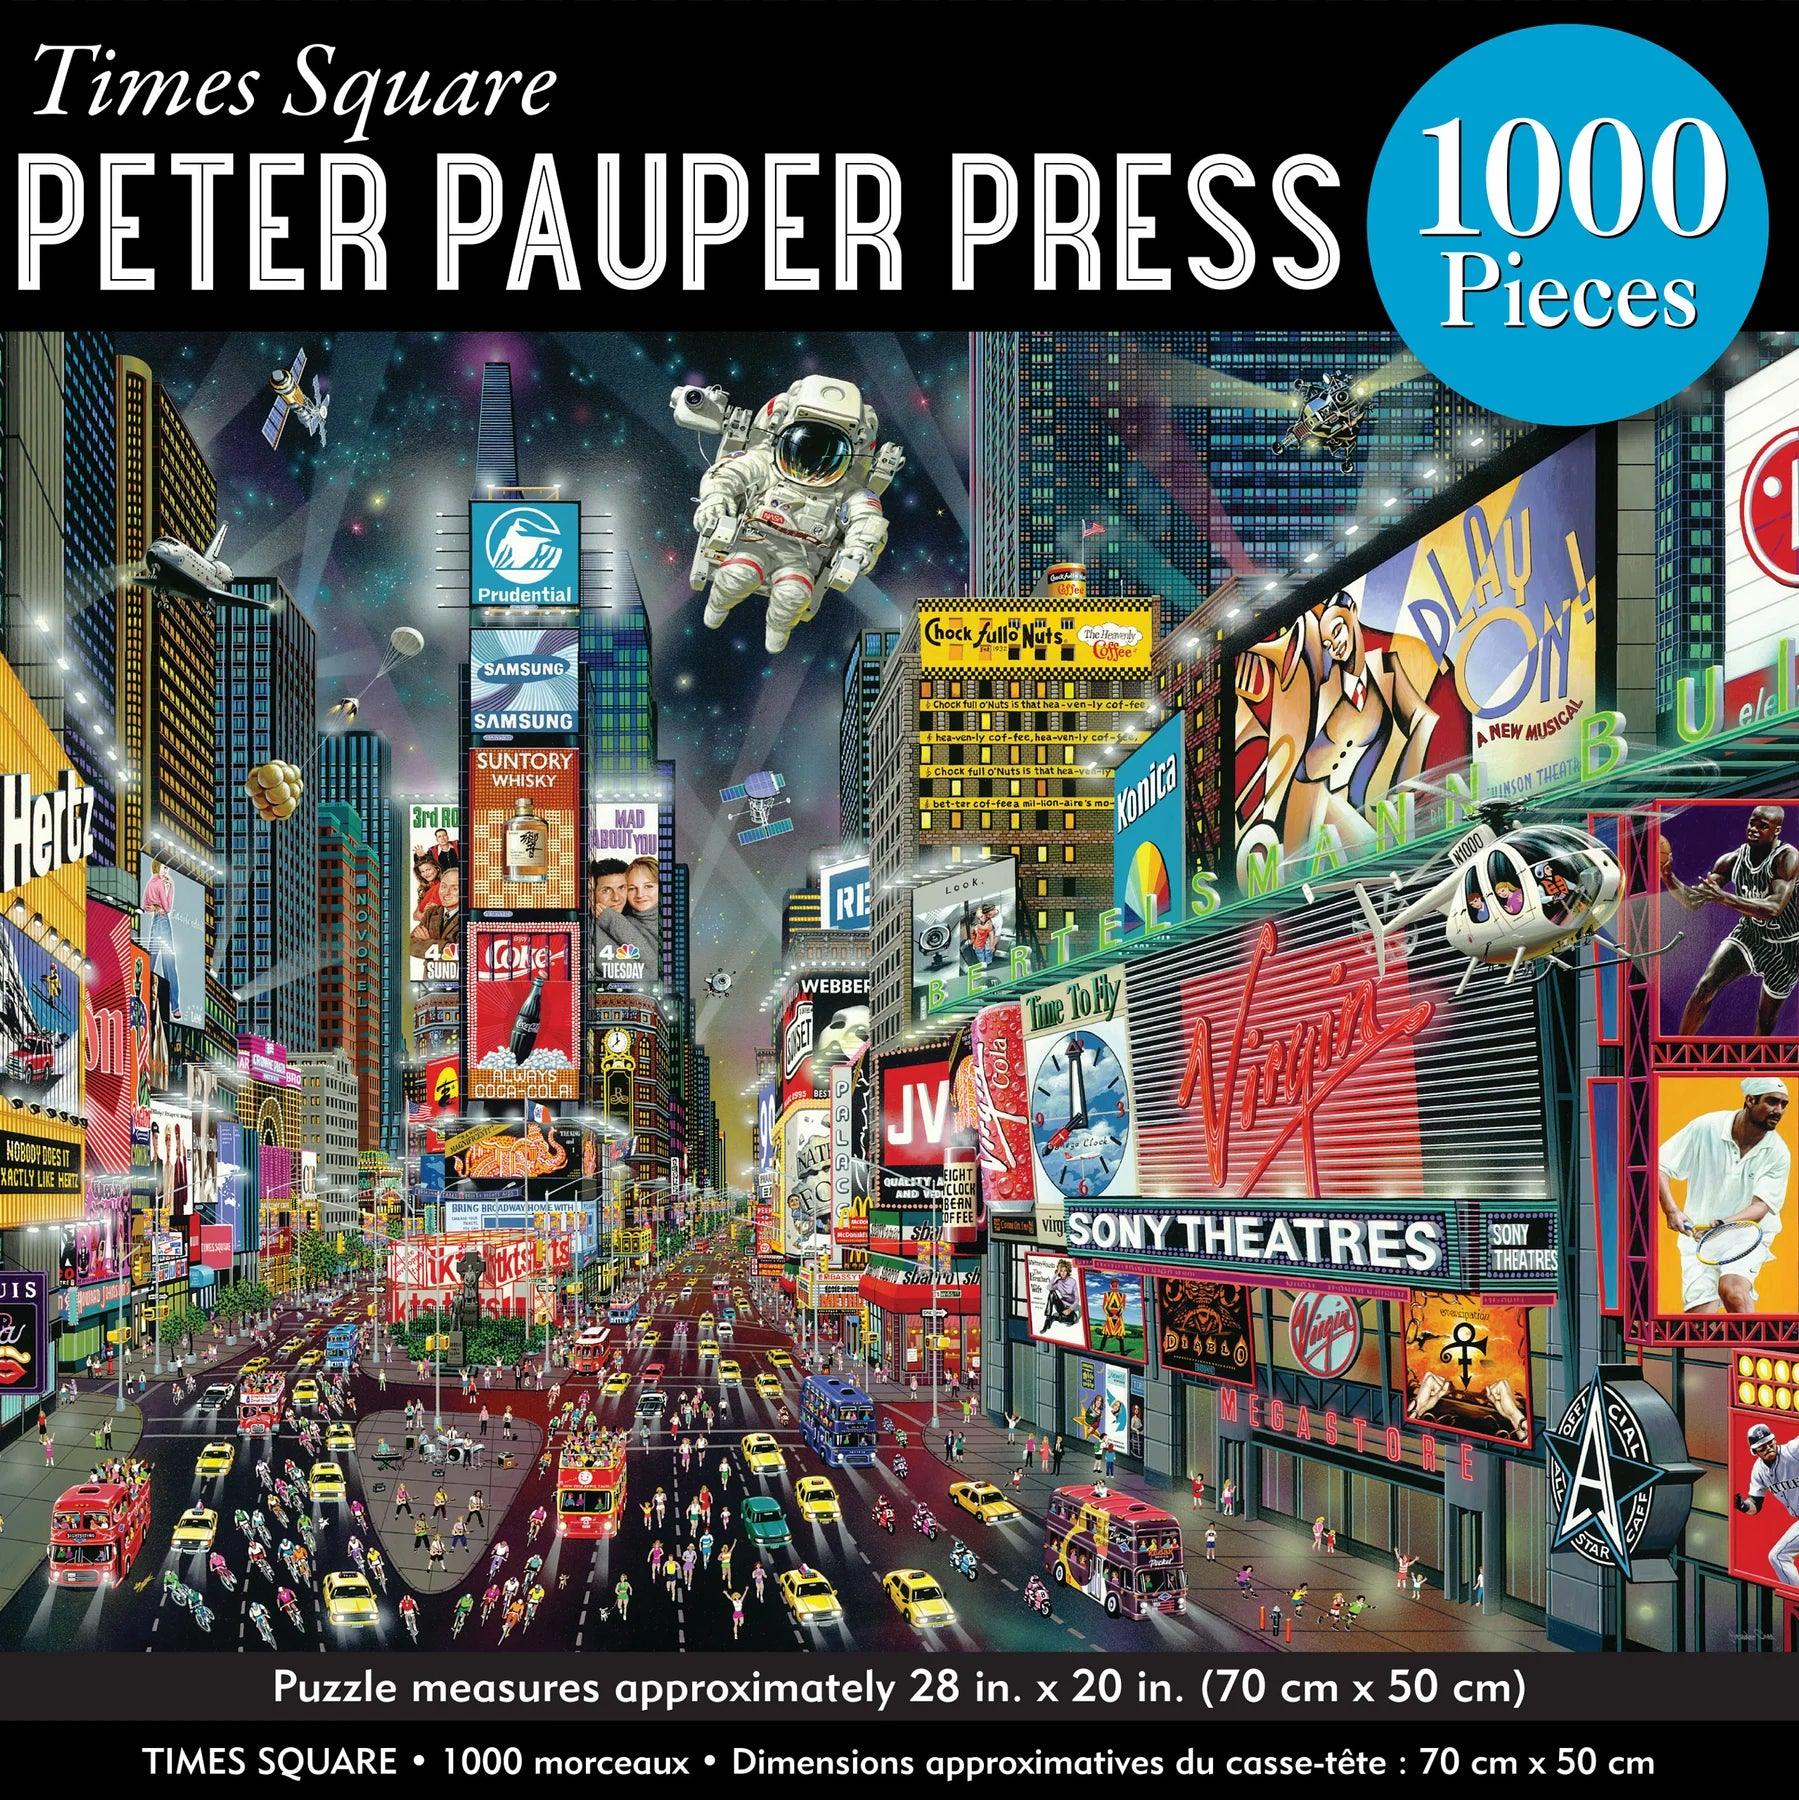 Peter Pauper Times Square 1000 Piece Jigsaw Puzzle - Eclipse Games Puzzles Novelties